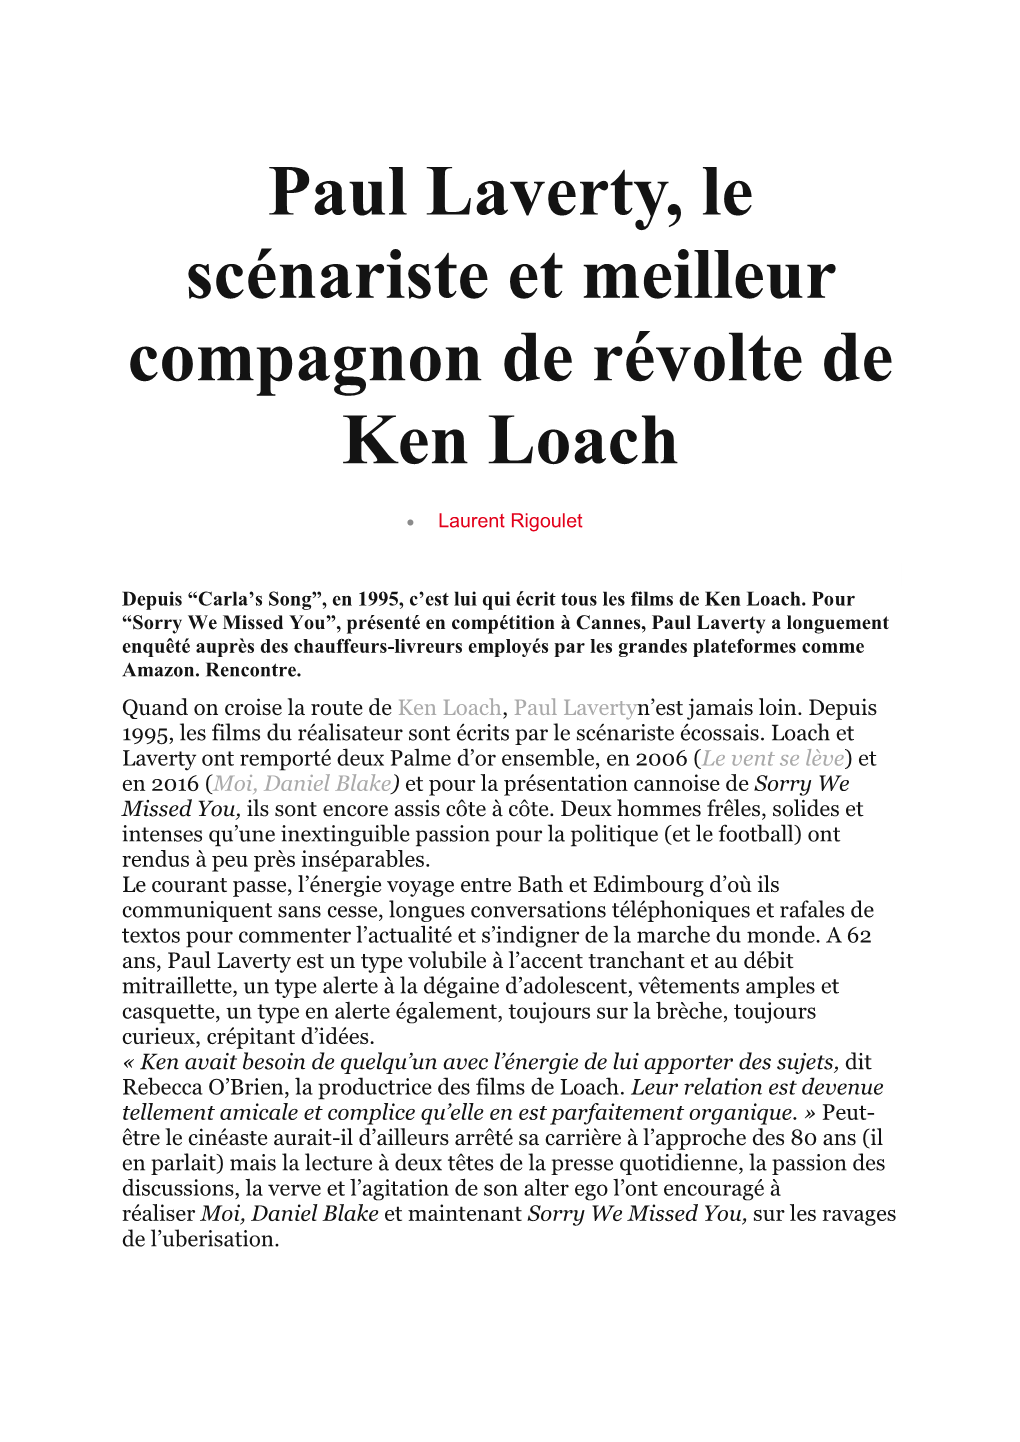 Paul Laverty, Le Scénariste Et Meilleur Compagnon De Révolte De Ken Loach